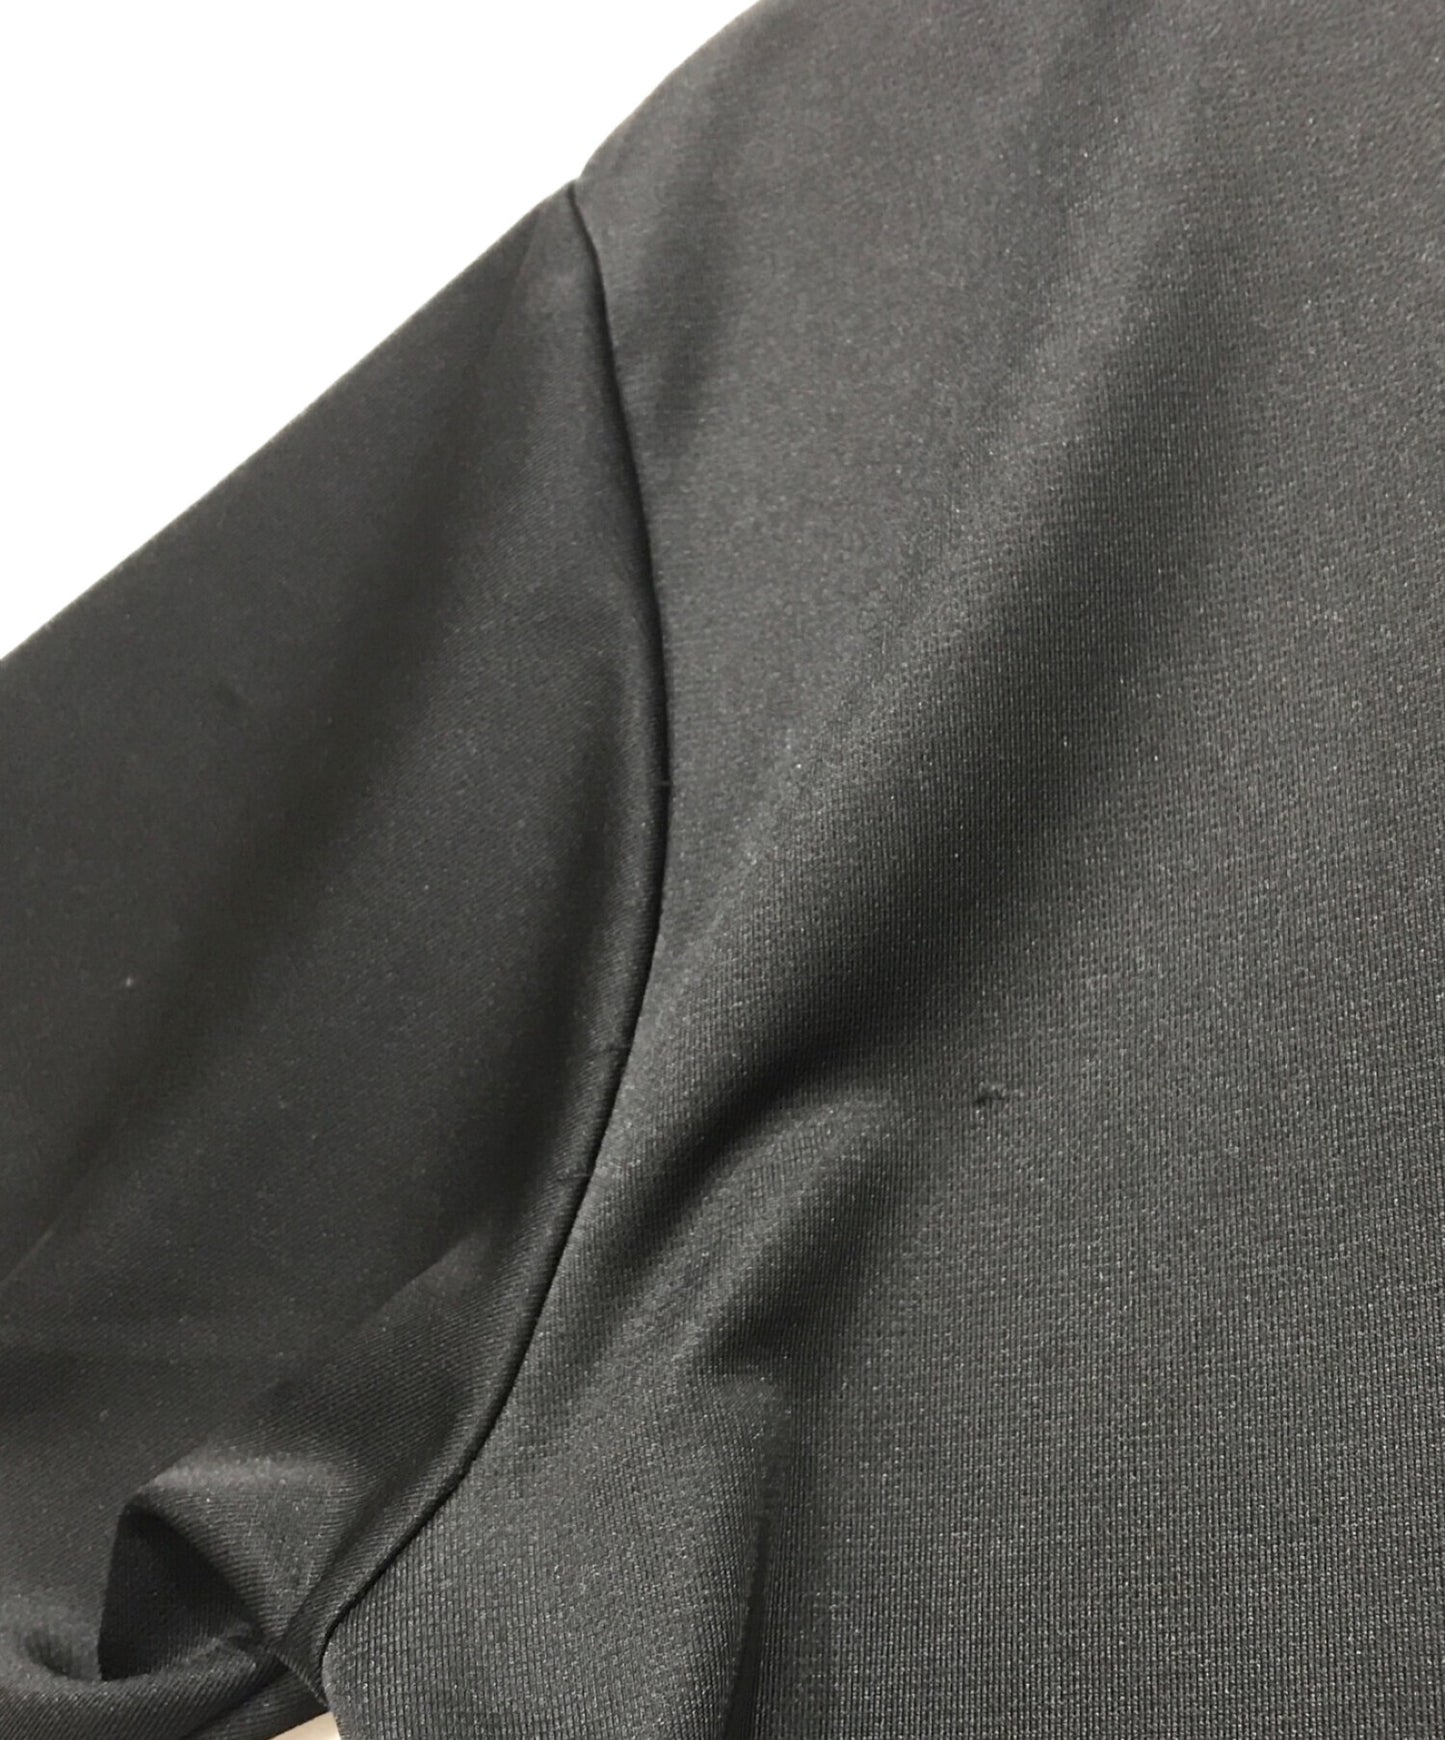 黑色COMME DES GARCONS×NIKE印刷T恤1E-T101